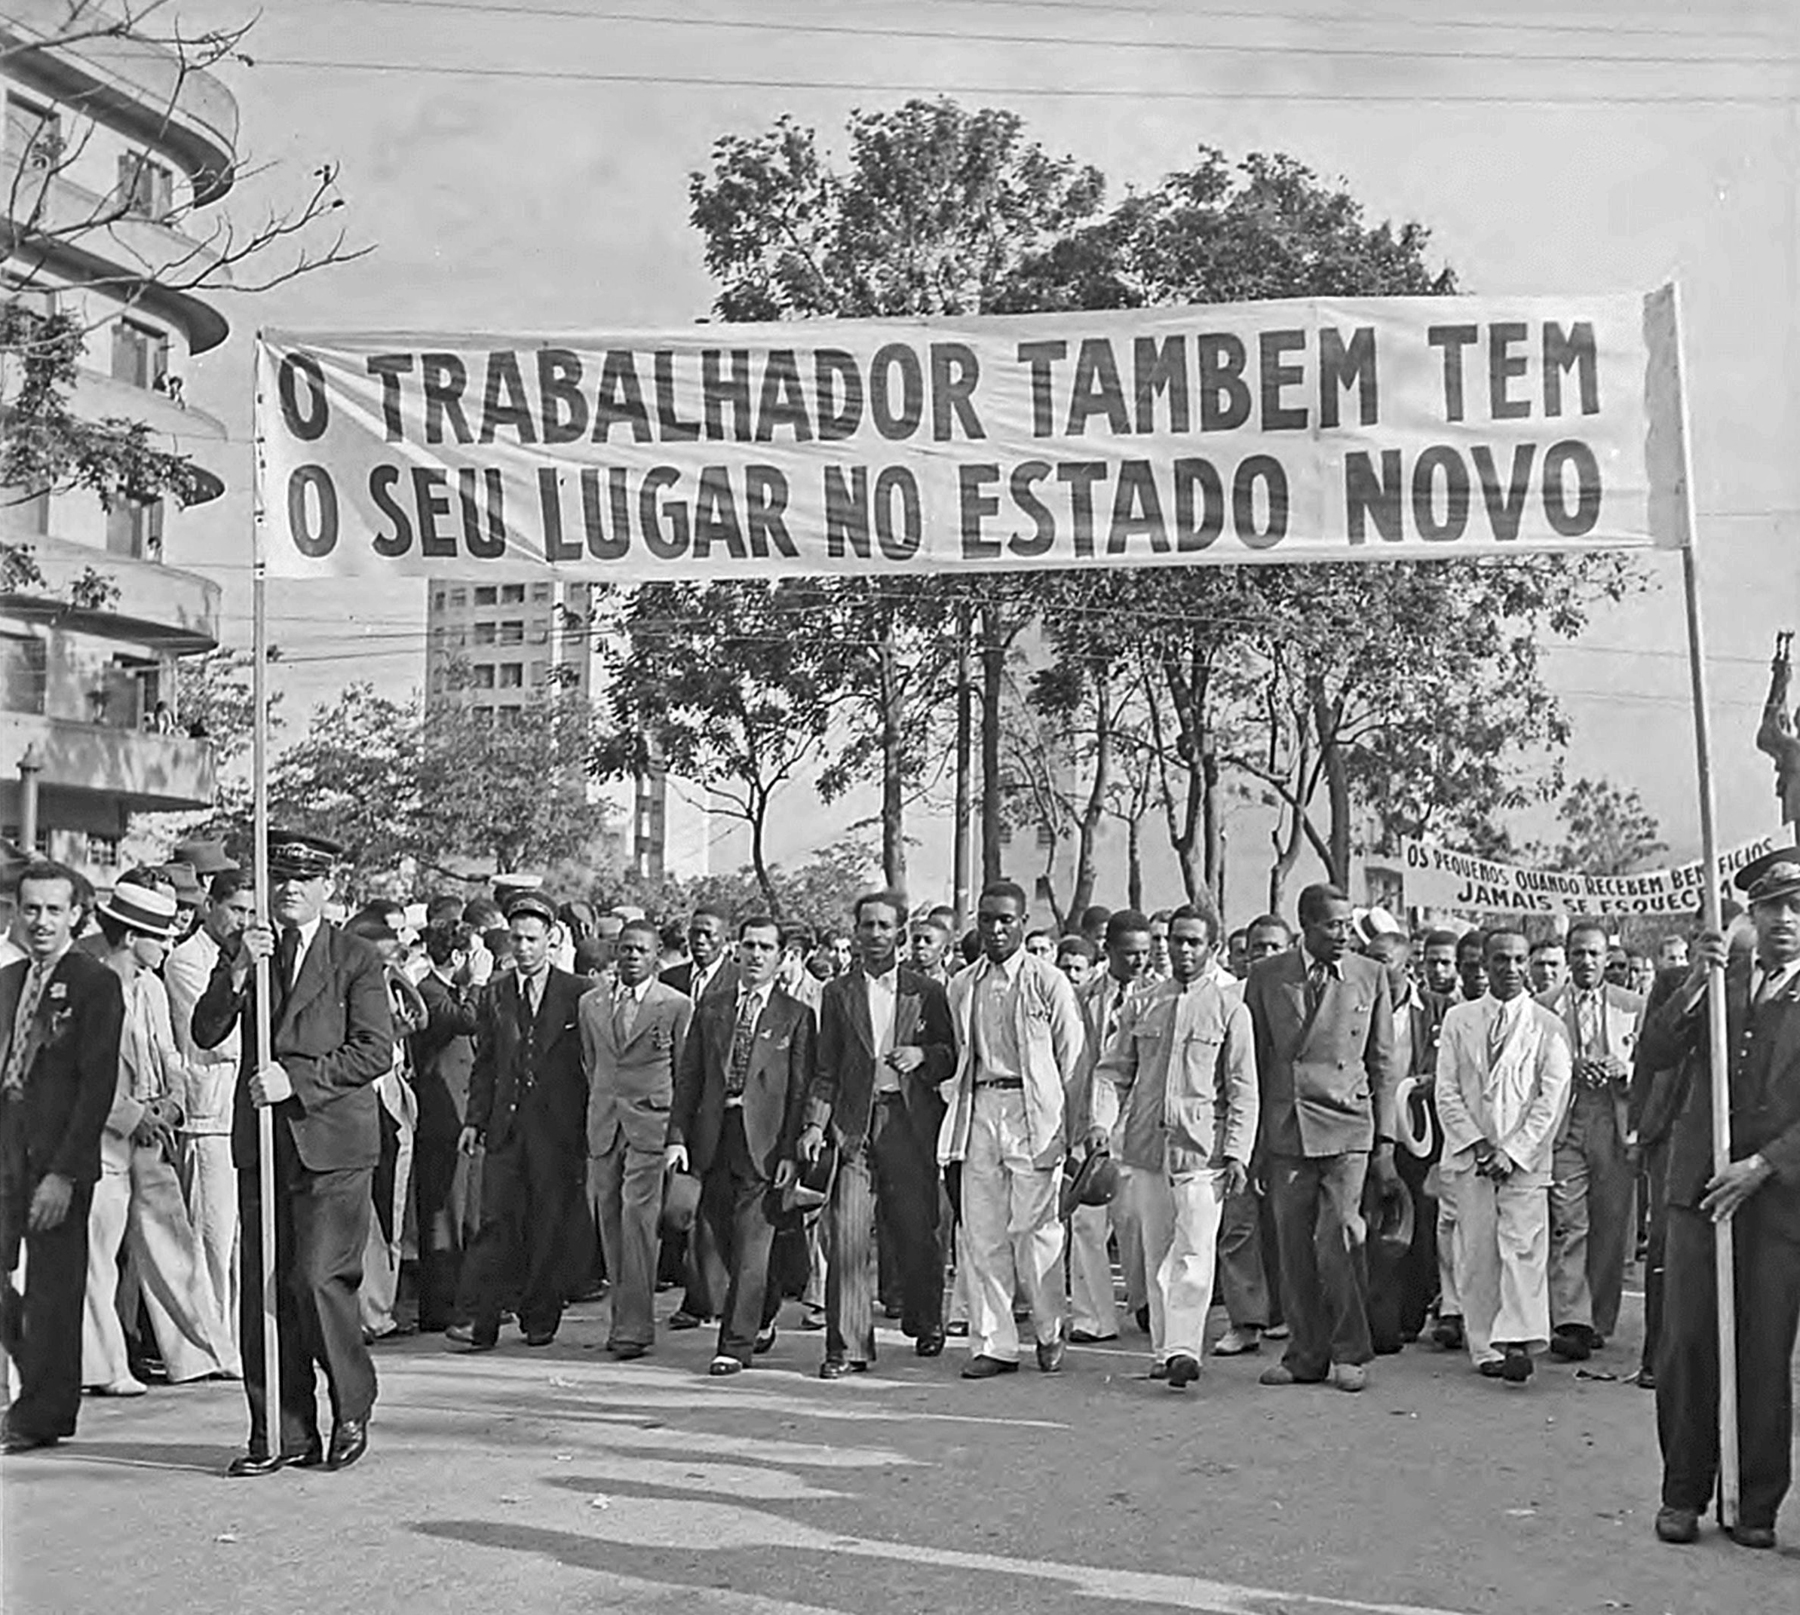 Fotografia em preto e branco. Um grupo de homens aglomerados, lado a lado, vestindo trajes sociais e portando uma faixa com o texto: 'O trabalhador também tem o seu lugar no Estado Novo'.